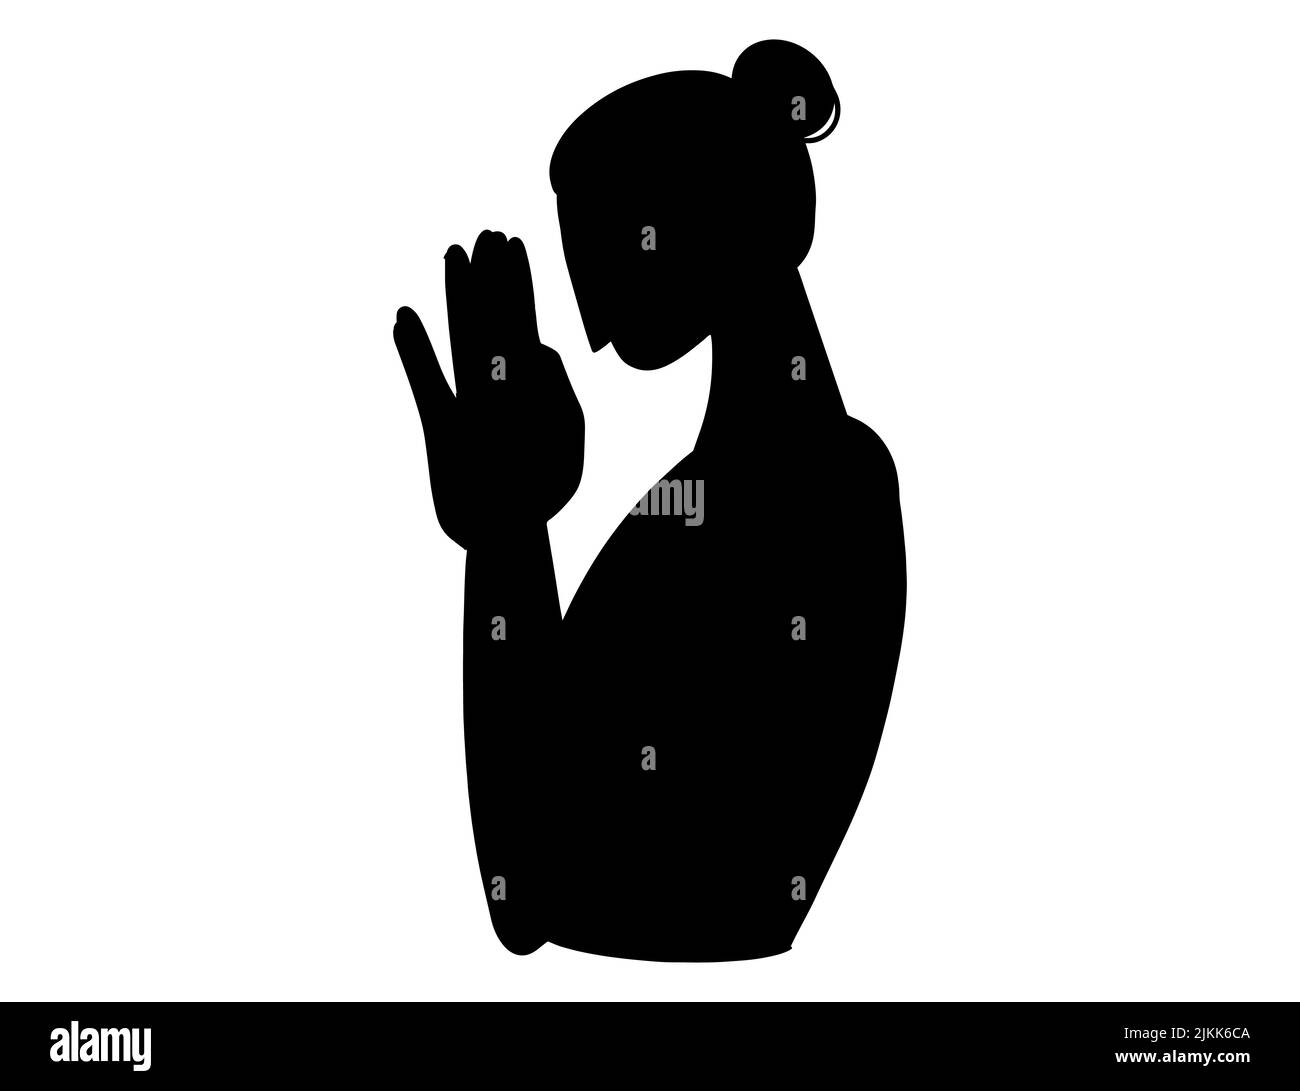 Une silhouette noire d'une femme levant les mains pour faire un souhait et prier, espoir Illustration de Vecteur